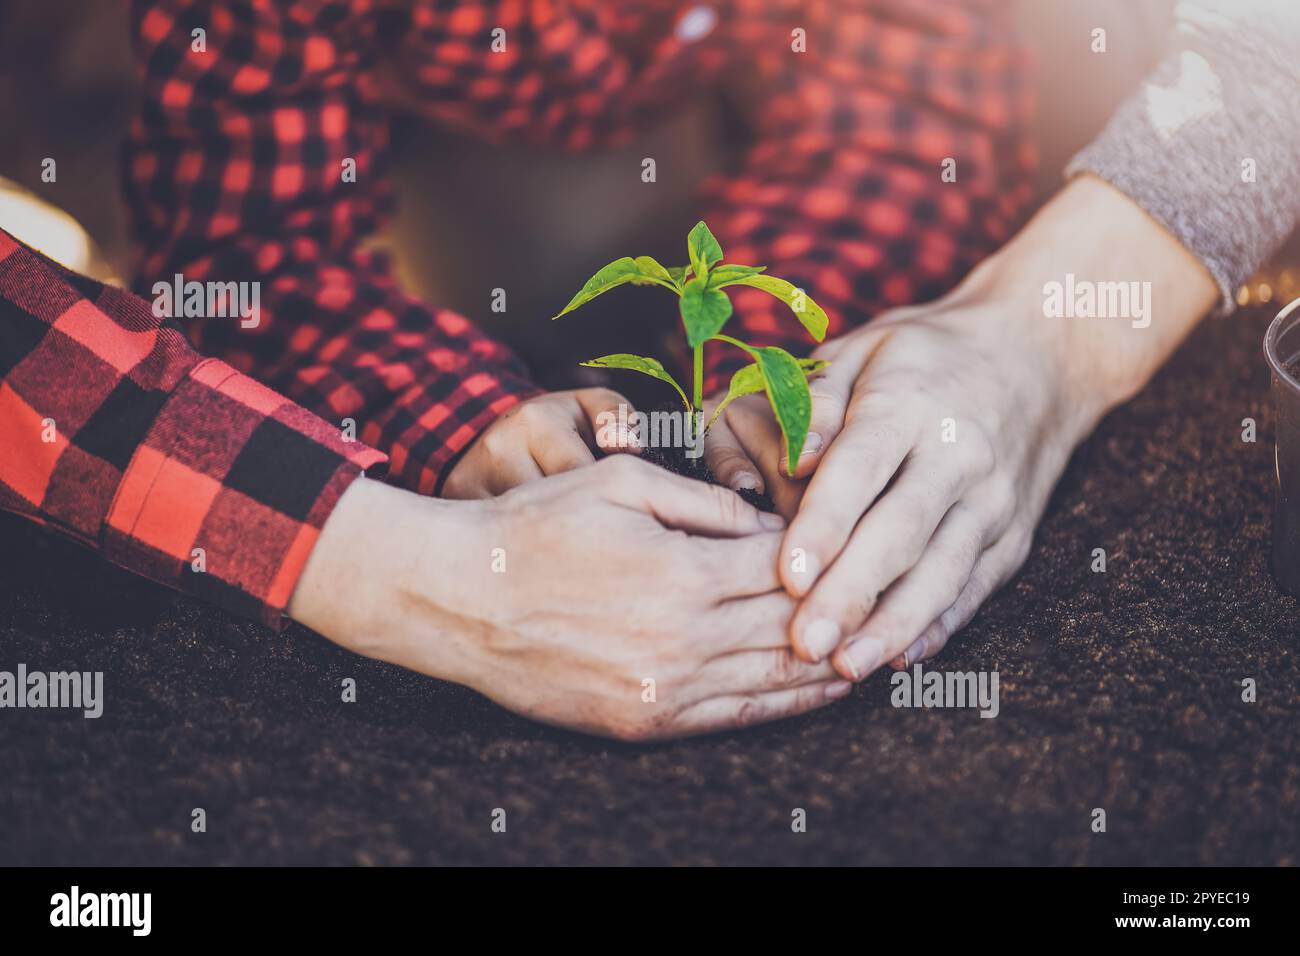 Vater, Mutter und ihr Kind halten eine junge Pflanze zusammen, die im Boden gewachsen ist. Stockfoto